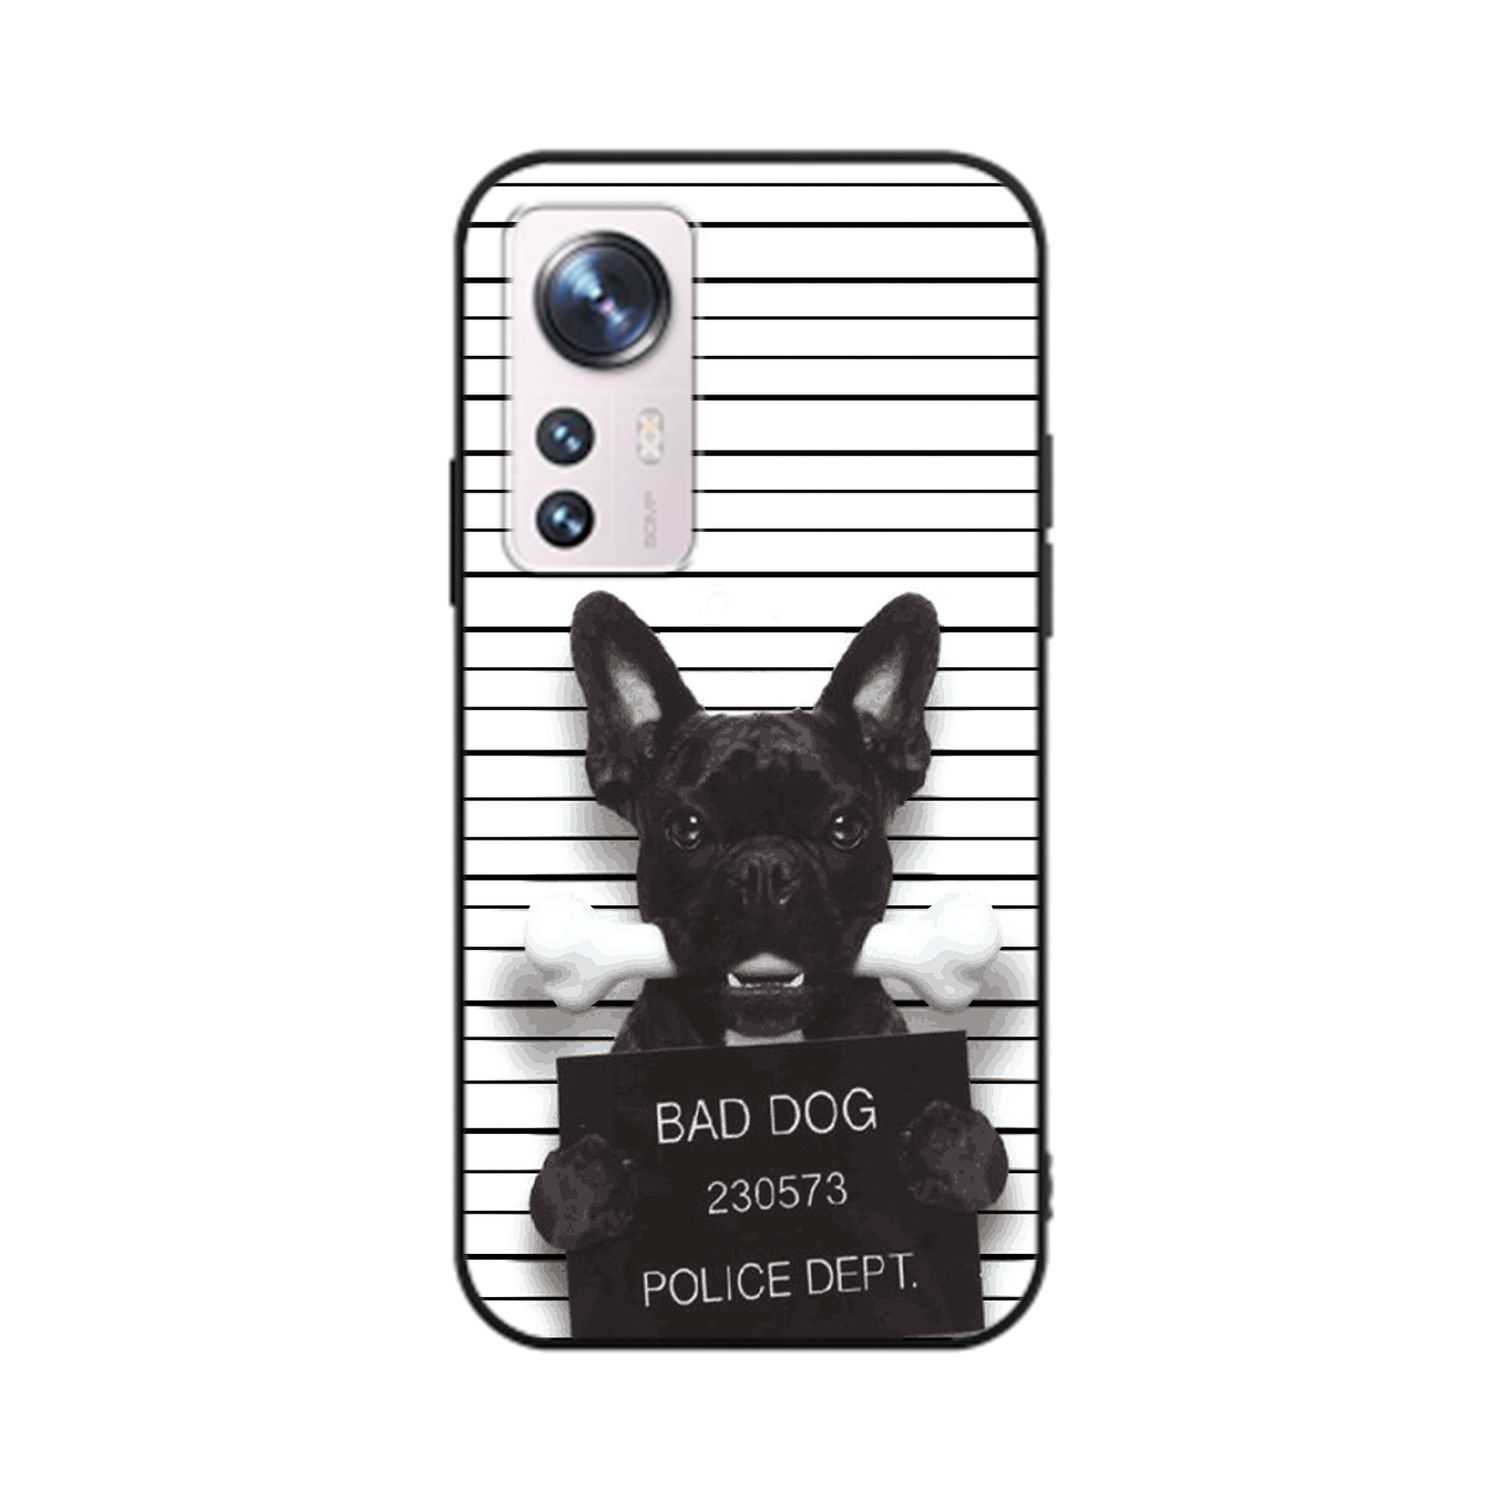 KÖNIG Backcover, Bad Dog 12 Case, DESIGN Bulldogge Pro, Xiaomi,